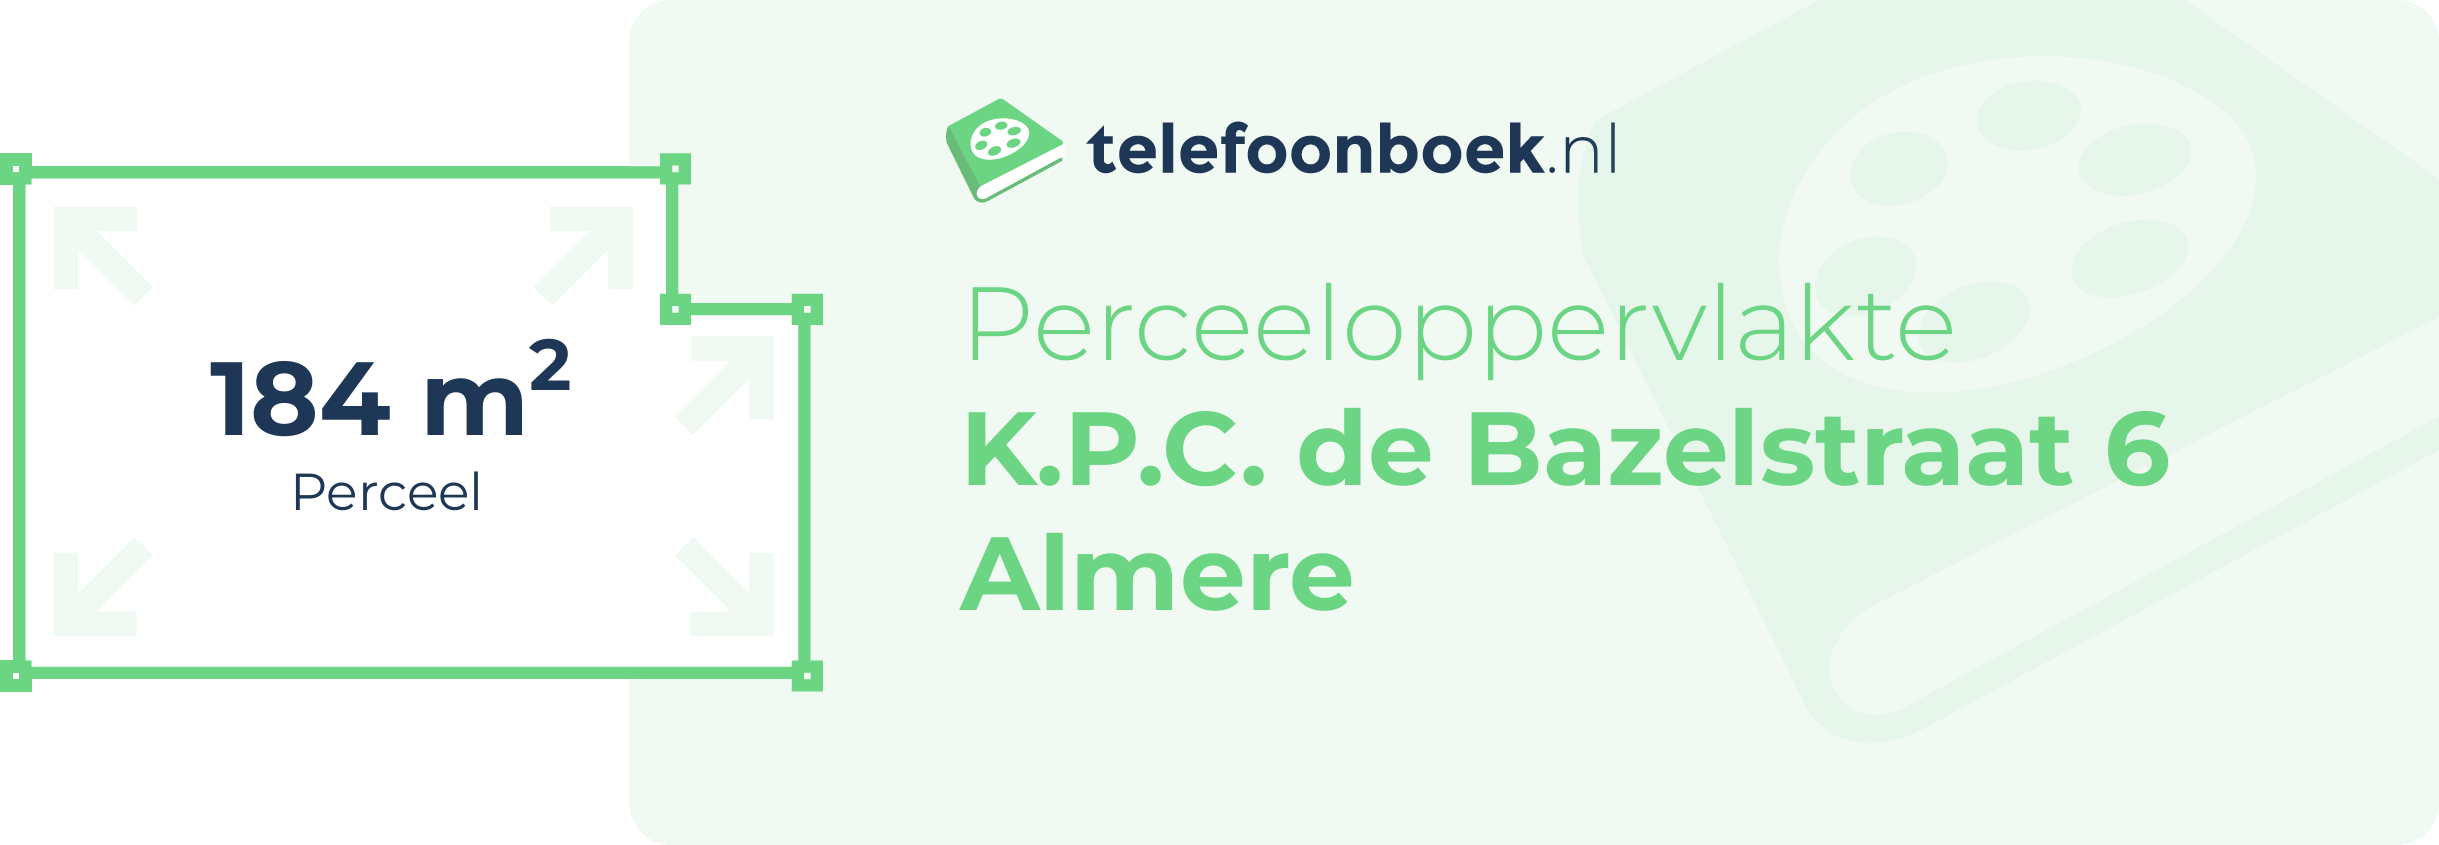 Perceeloppervlakte K.P.C. De Bazelstraat 6 Almere